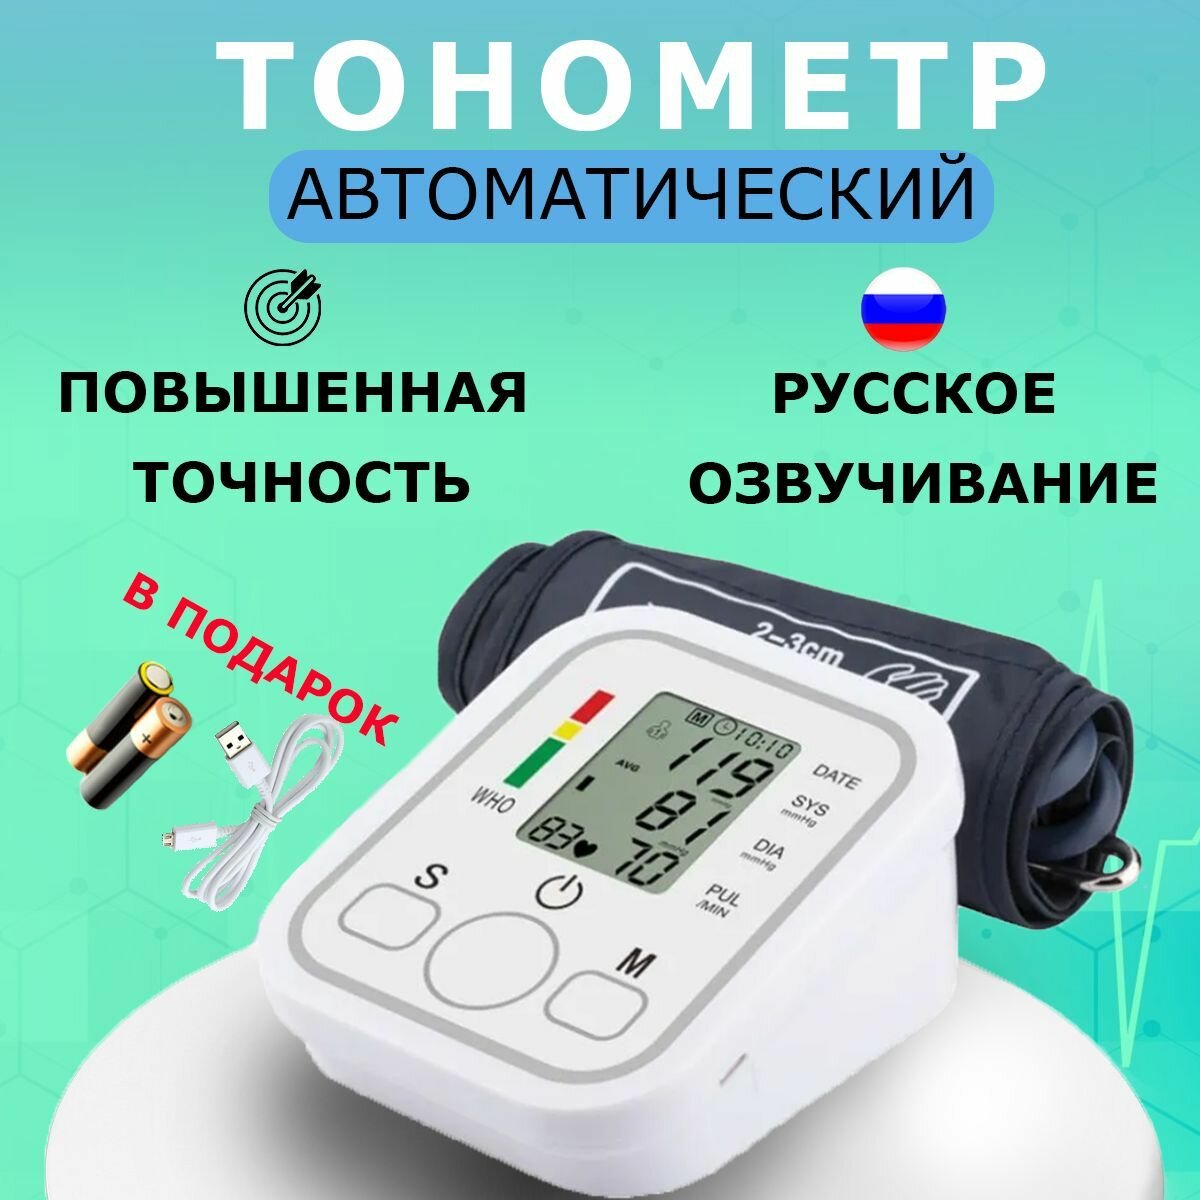 Тонометр автоматический с манжетой на предплечье / Измеритель артериального давления / Аппарат для измерения давления и пульса на предплечье